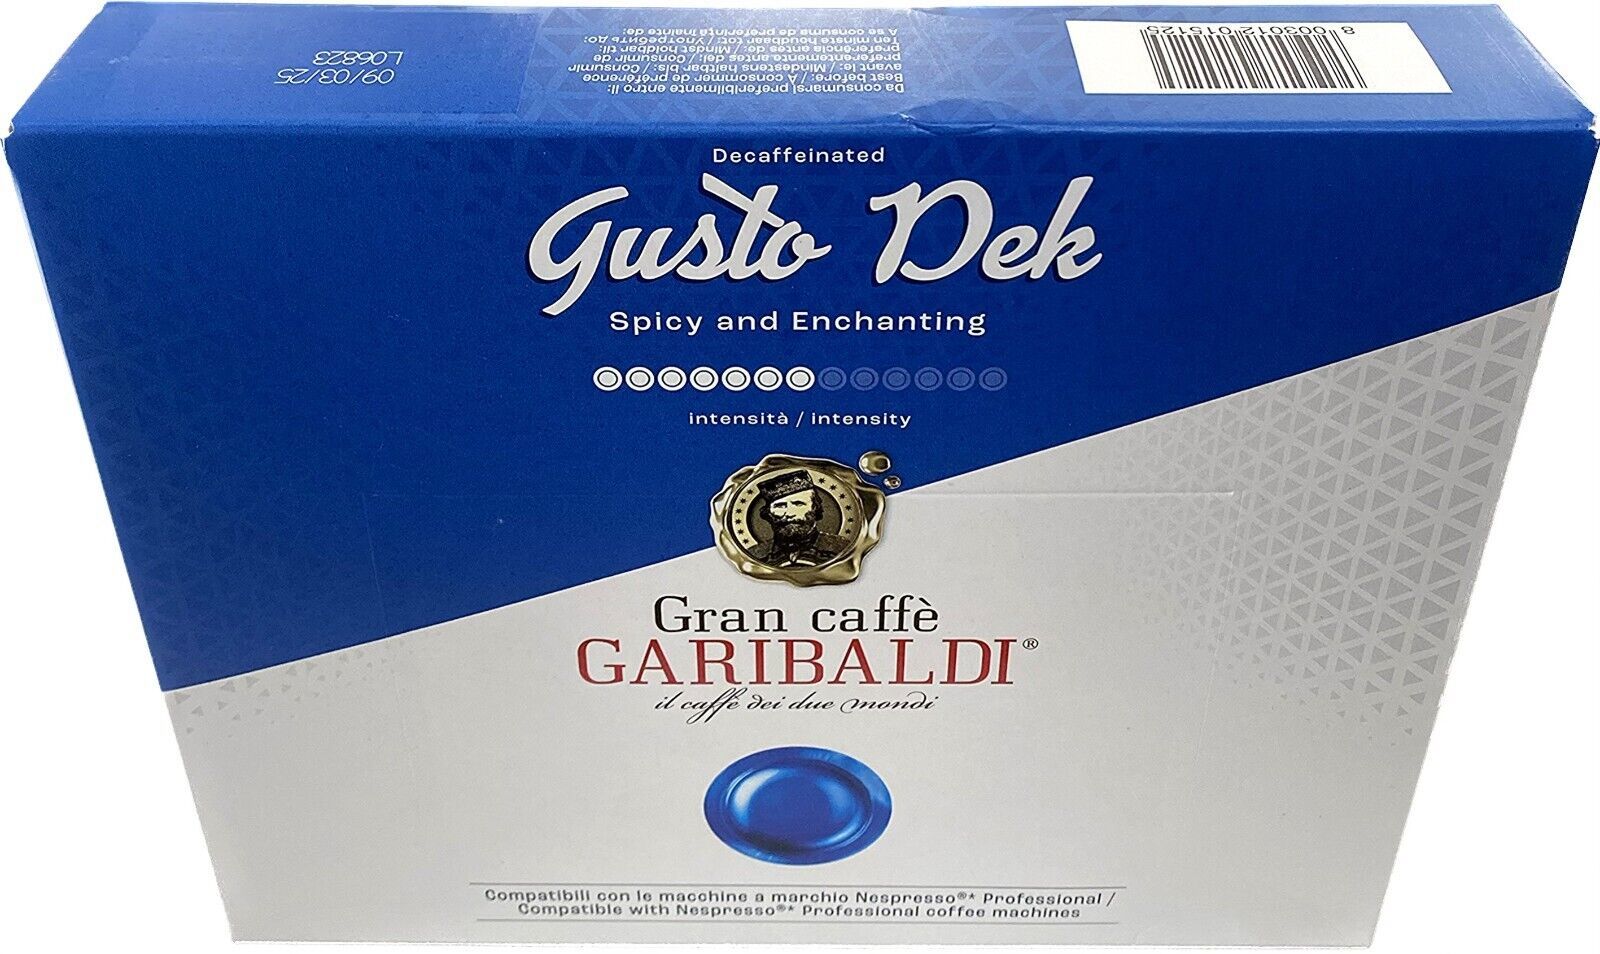 Primary image for Gran Caffe Garibaldi Gusto Dek Nespresso Professional Compatible 50 Capsules